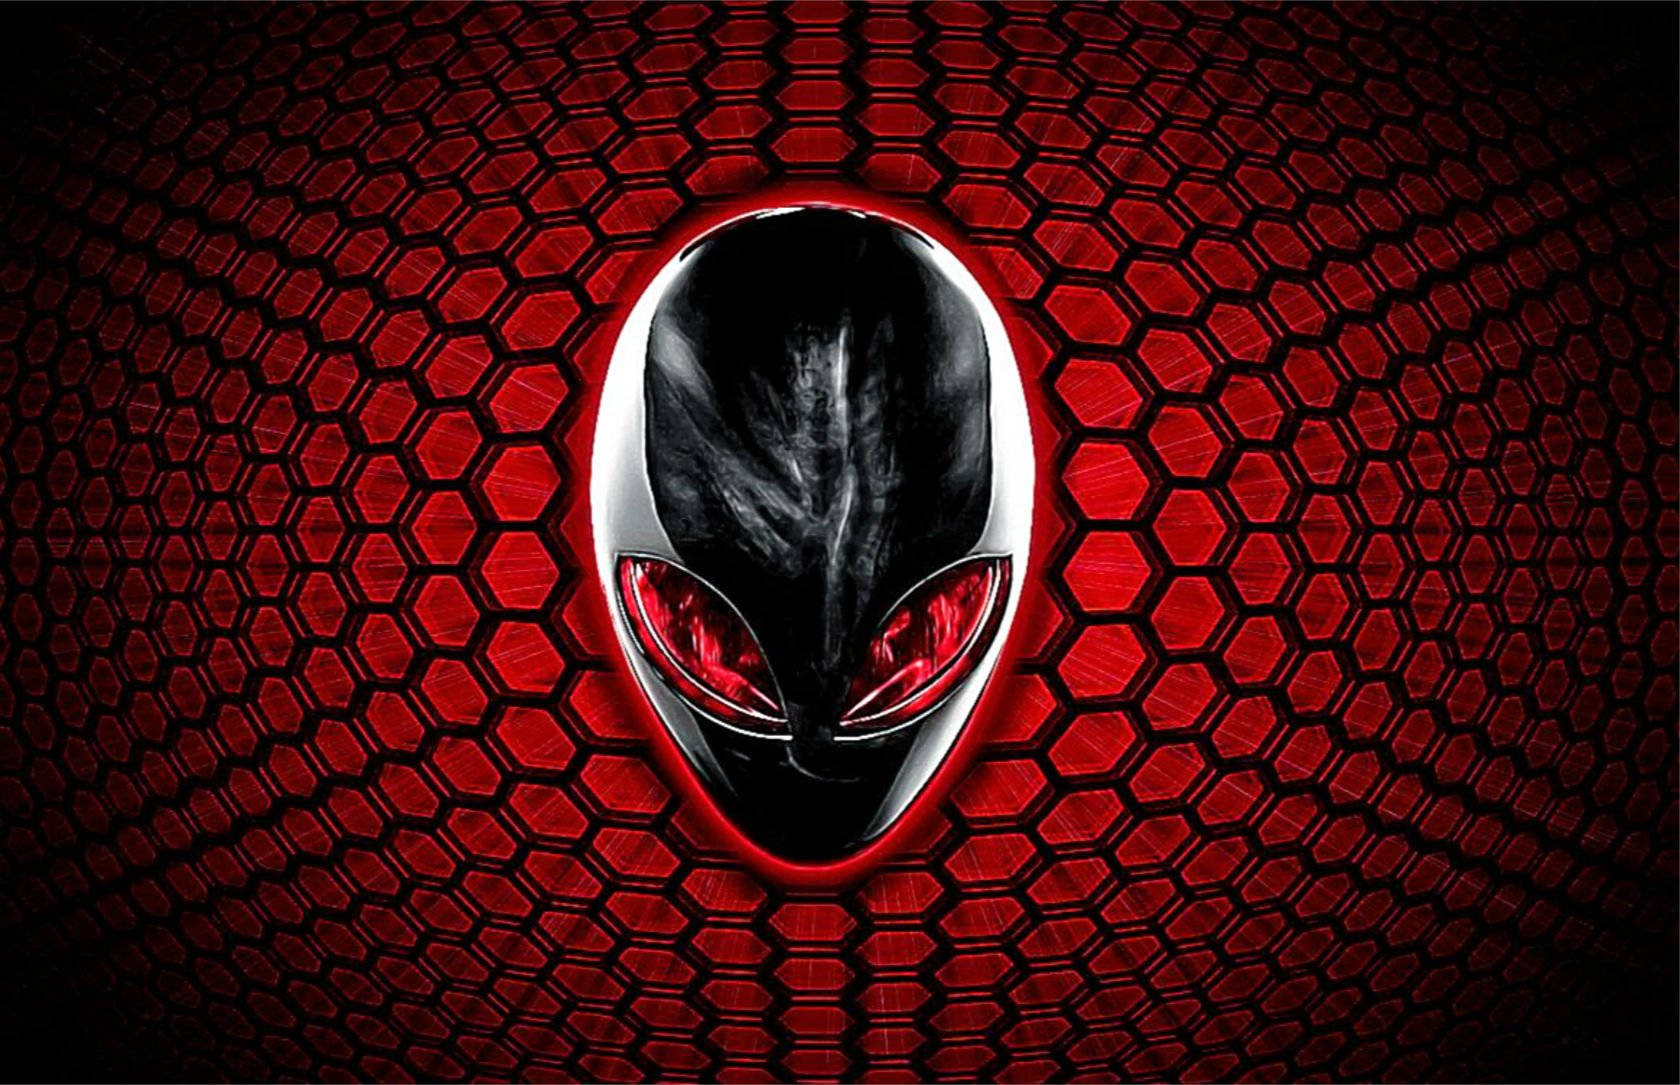 alienware logo red